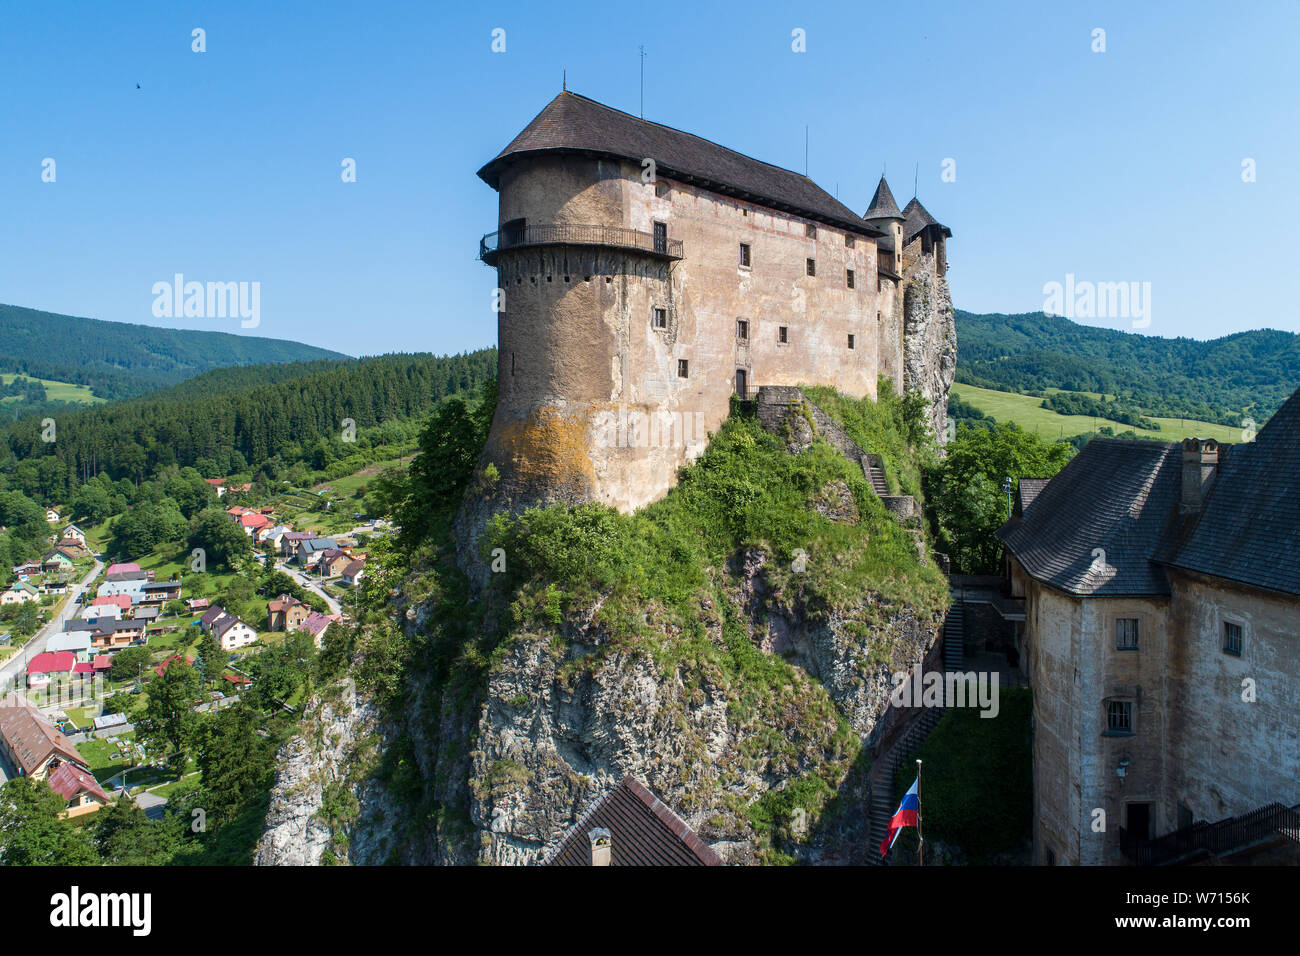 Castello di Orava - Oravsky Hrad in Oravsky Podzamok in Slovacchia. Fortezza medievale sul estremamente alta e ripida scogliera. Vista aerea. Foto Stock